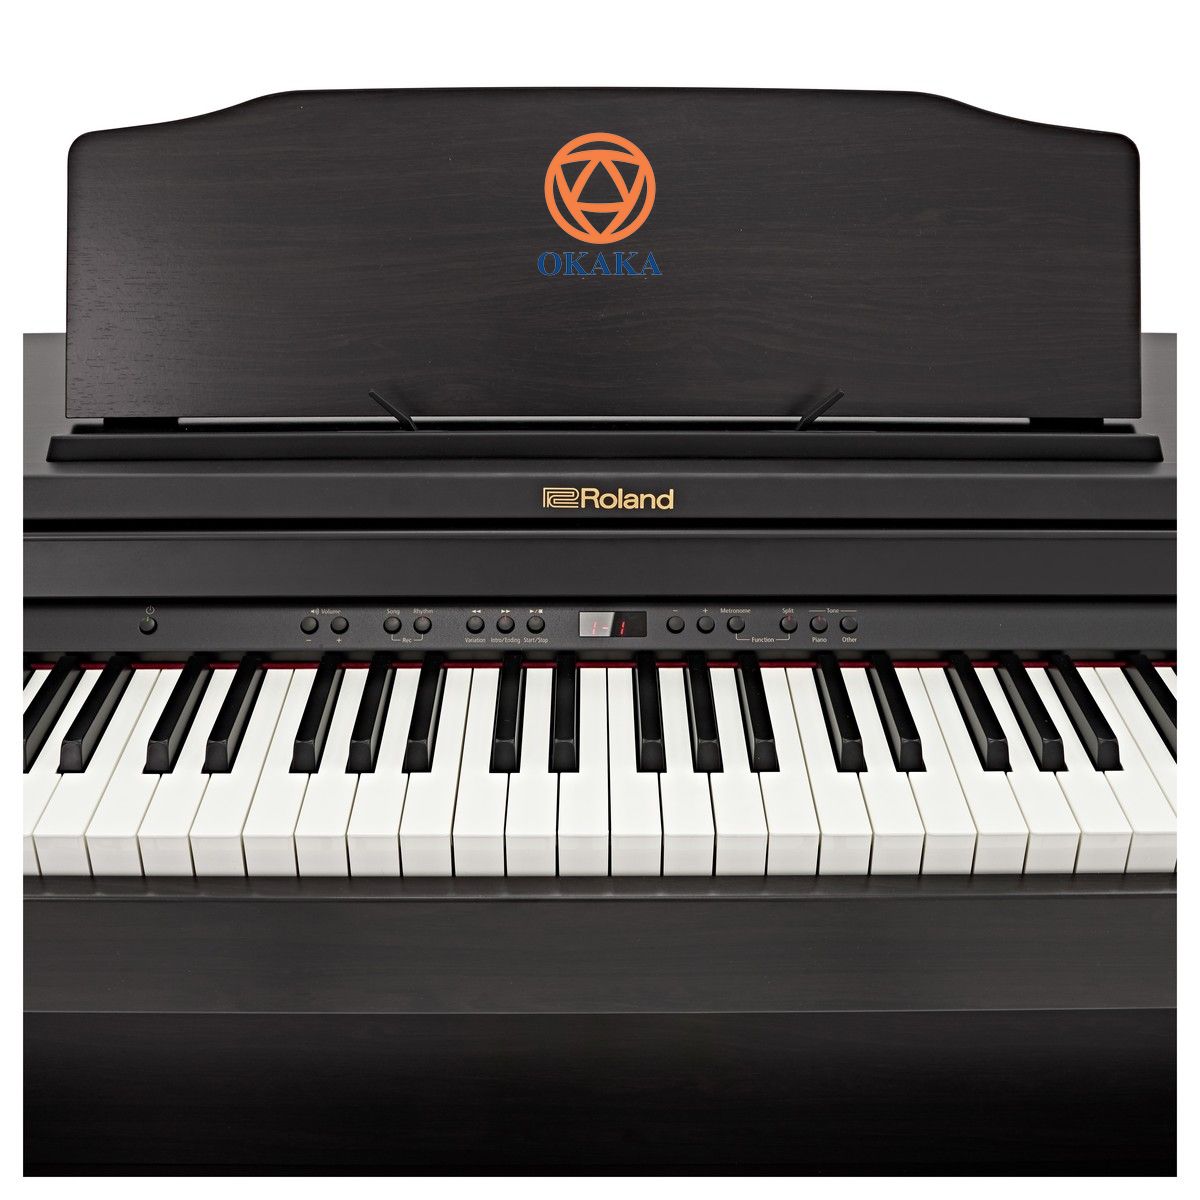 Là nhạc cụ lý tưởng cho các gia đình trẻ và bất cứ ai muốn vui chơi hay học tập với đàn piano, RP-501R mang đến màn trình diễn cao cấp qua nhiều năm cải tiến không ngừng. Dẫu vậy, bạn cũng không nên bỏ qua bài đánh giá đàn piano điện Roland RP-501R rất chi tiết sau đây!